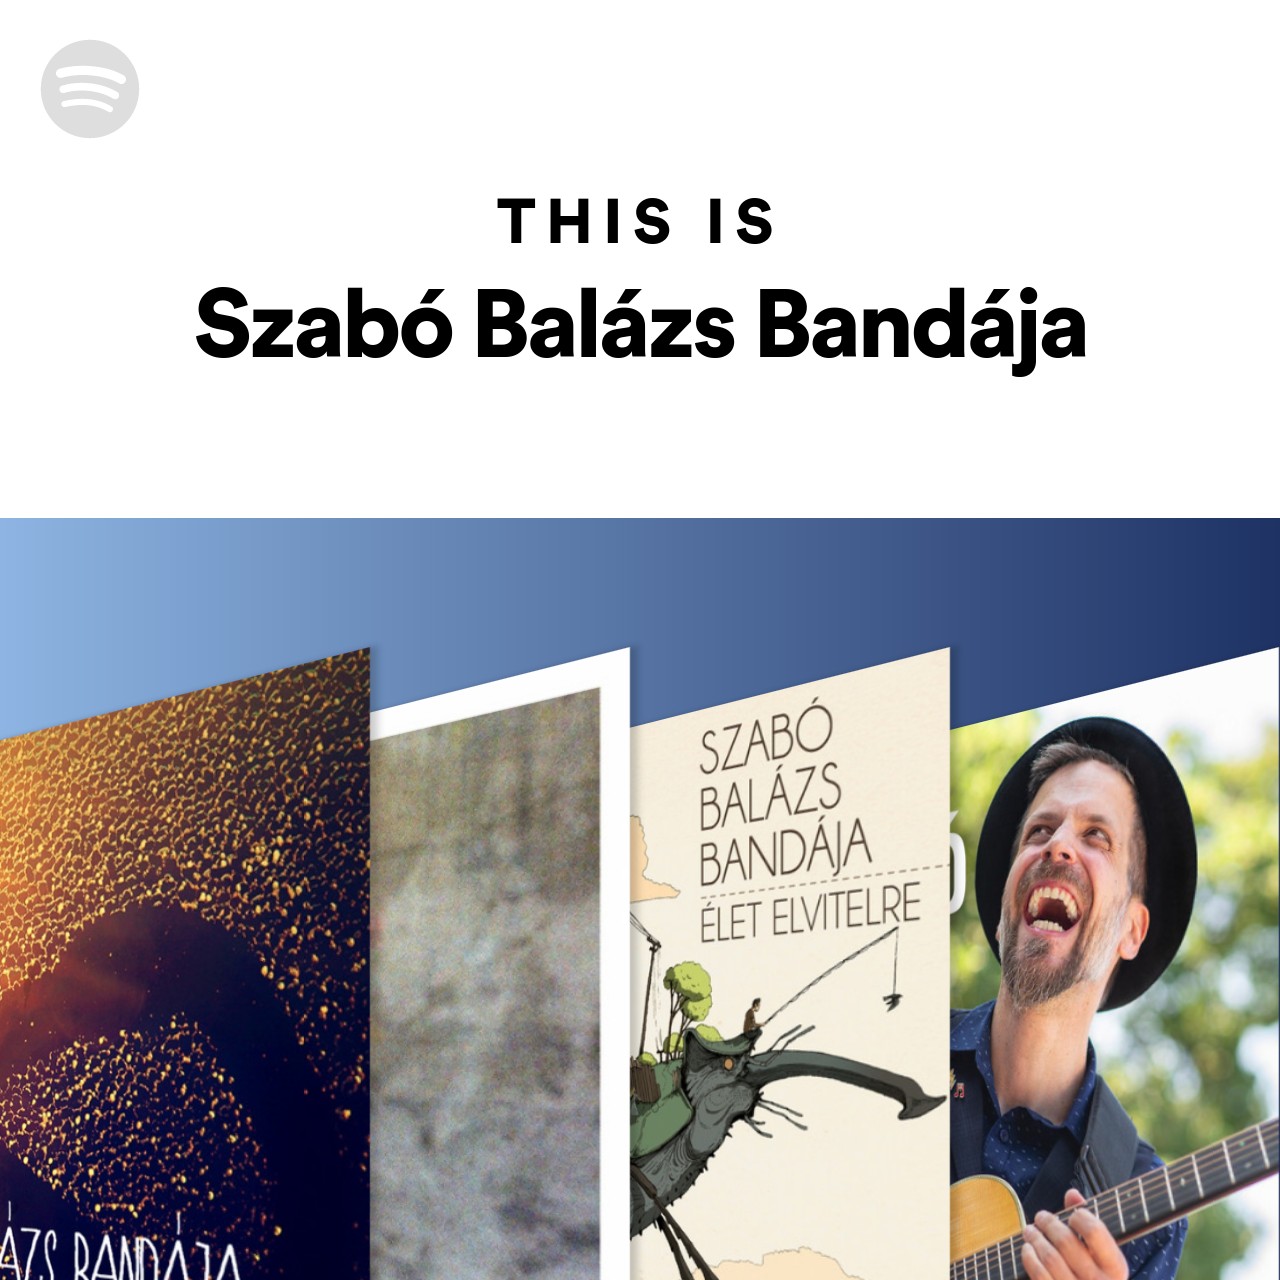 This Is Szabó Balázs Bandája